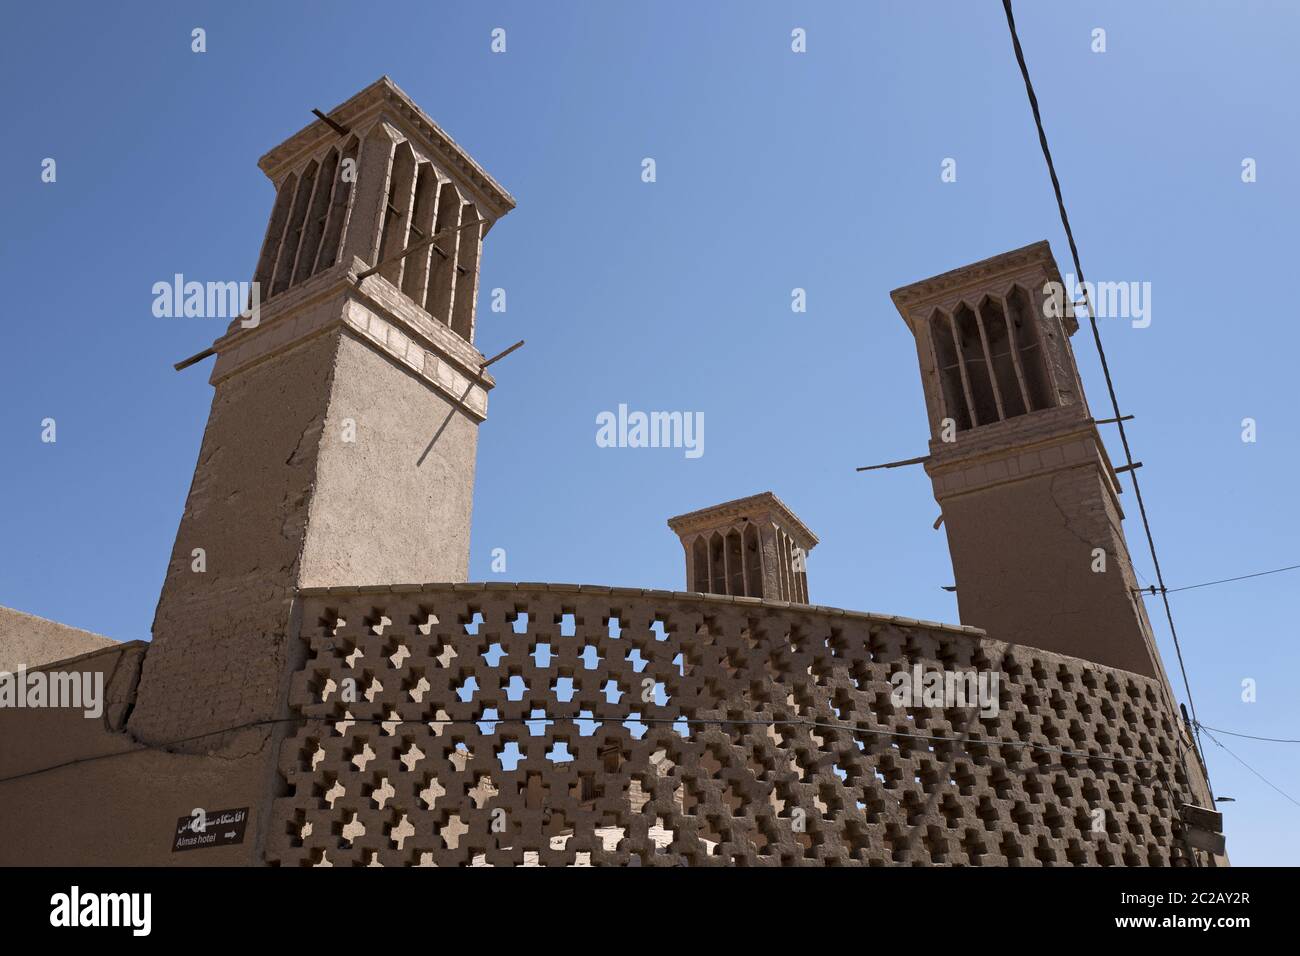 Torri eoliche, il tradizionale elemento architettonico persiano per creare ventilazione naturale negli edifici della città vecchia, Yazd, Iran. Foto Stock